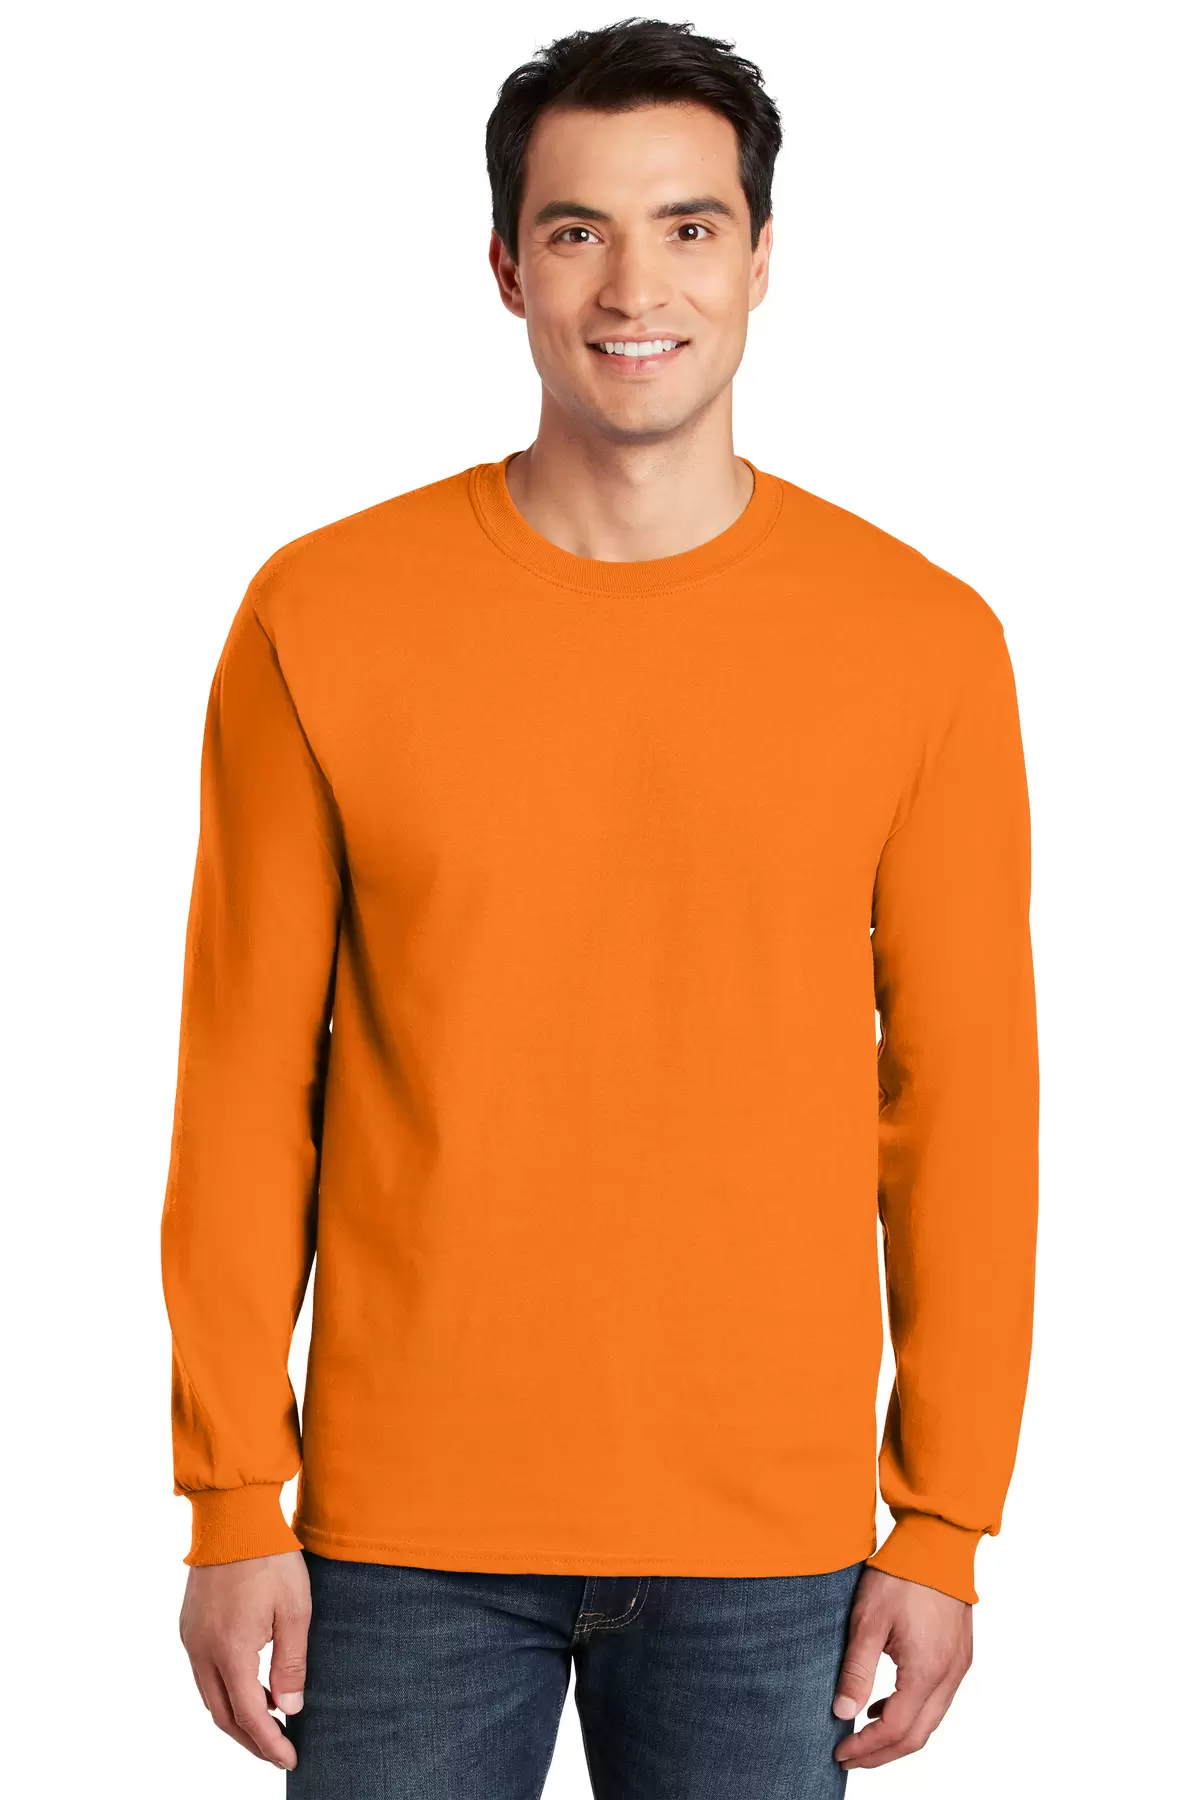 Gildan Men's Ultra Cotton Long Sleeve T-Shirt, Style G2400 